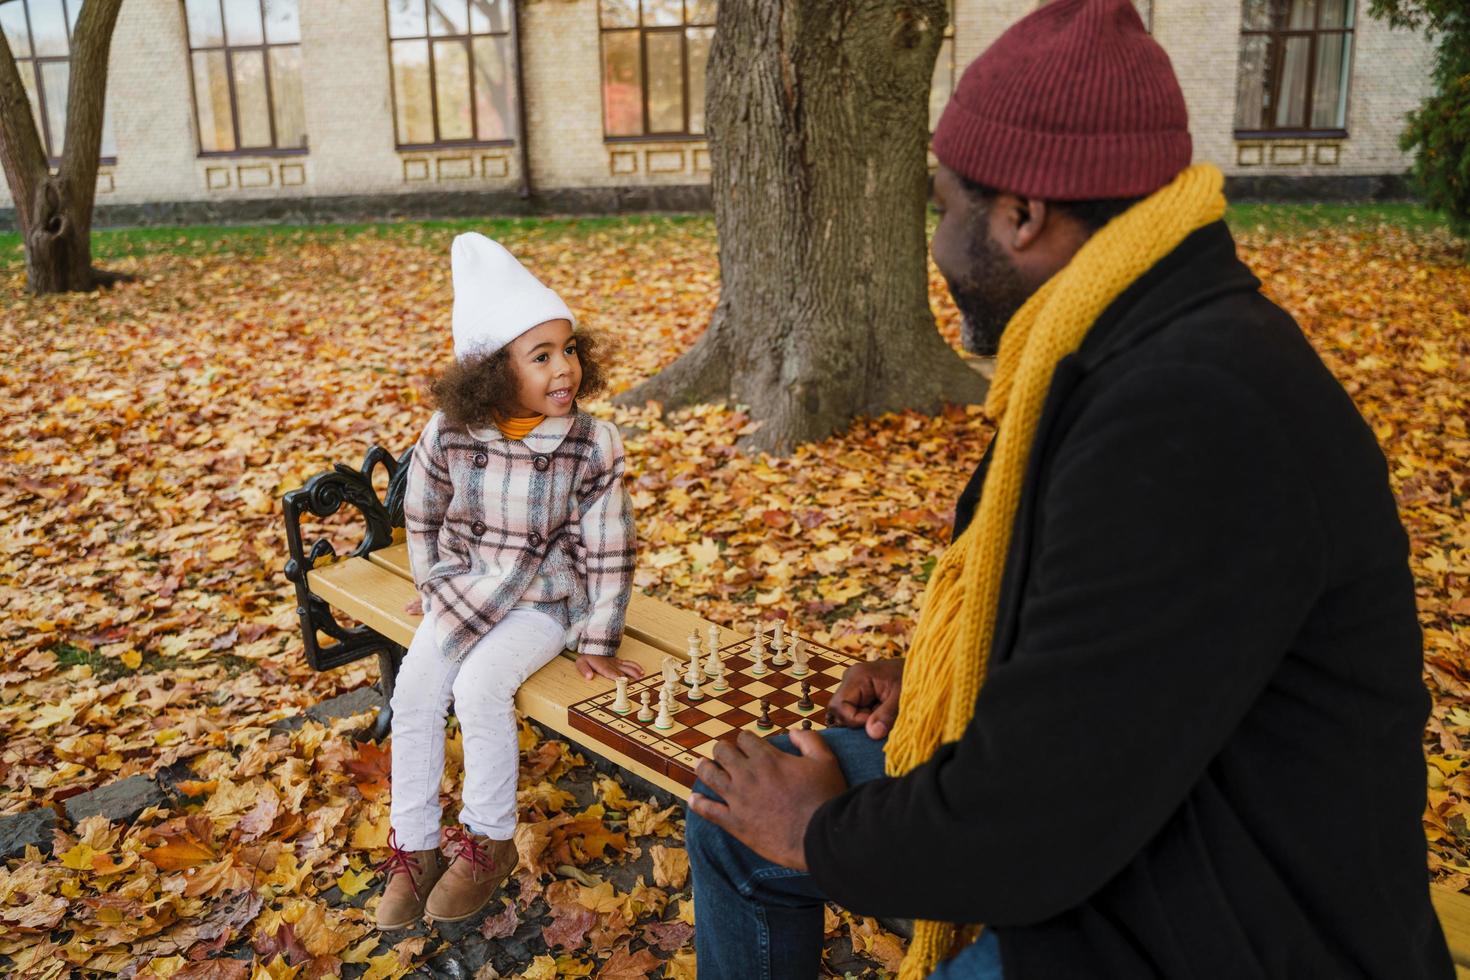 svart farfar och barnbarn spelar schack i höst park foto